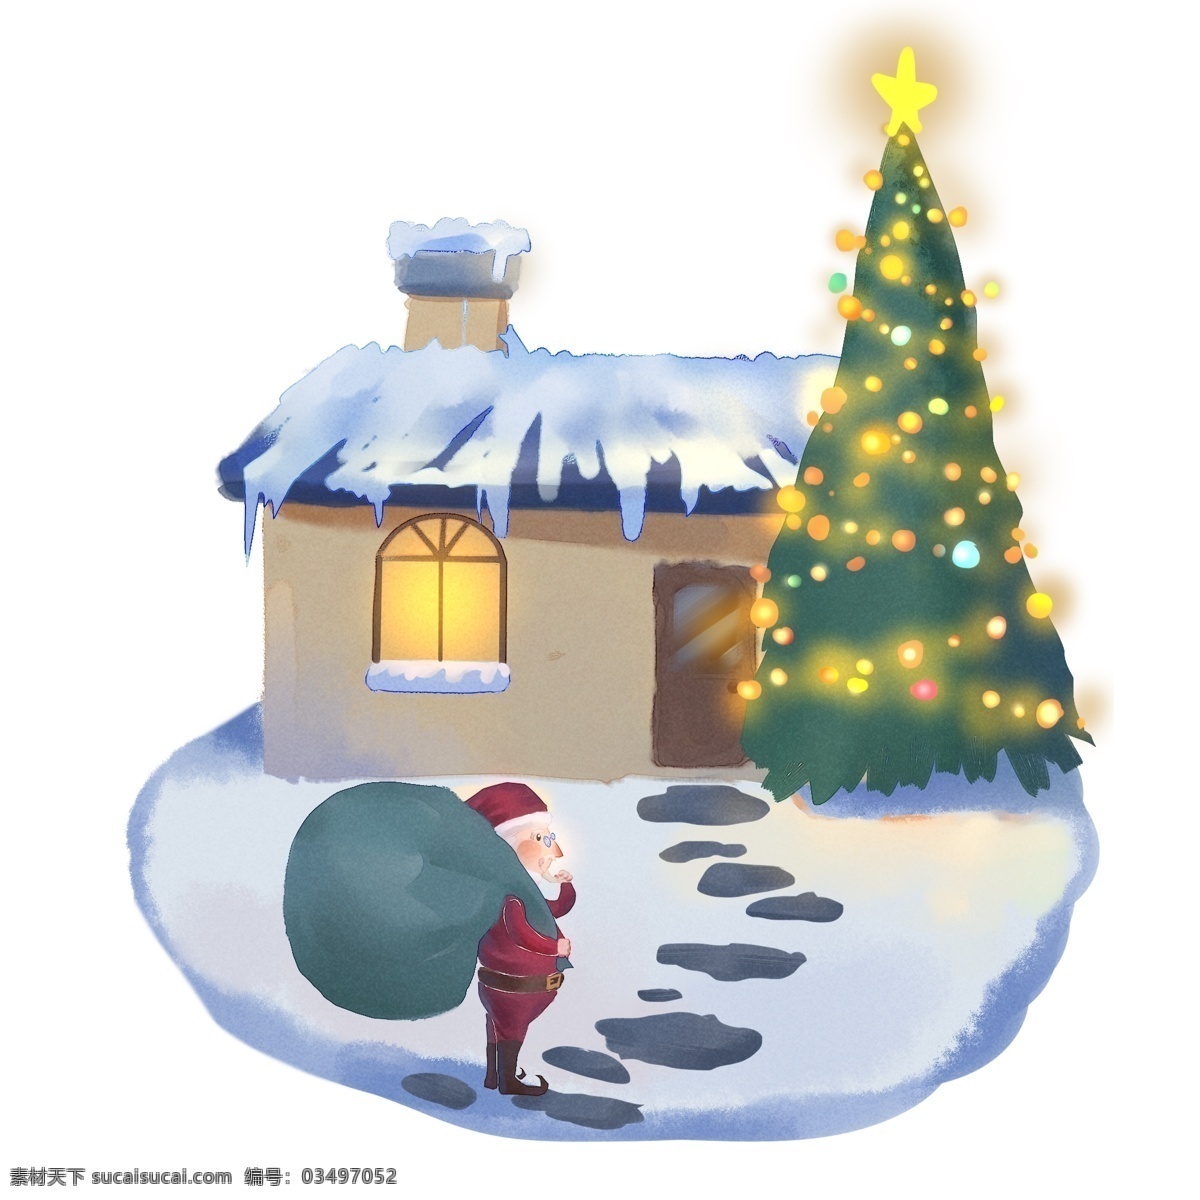 圣诞老人 悄悄 送礼 物 大雪 水彩 卡通 手绘 悄悄的 脚印 小路 房屋 烟囱 圣诞树 霓虹灯 窗户 包裹 门 绿色